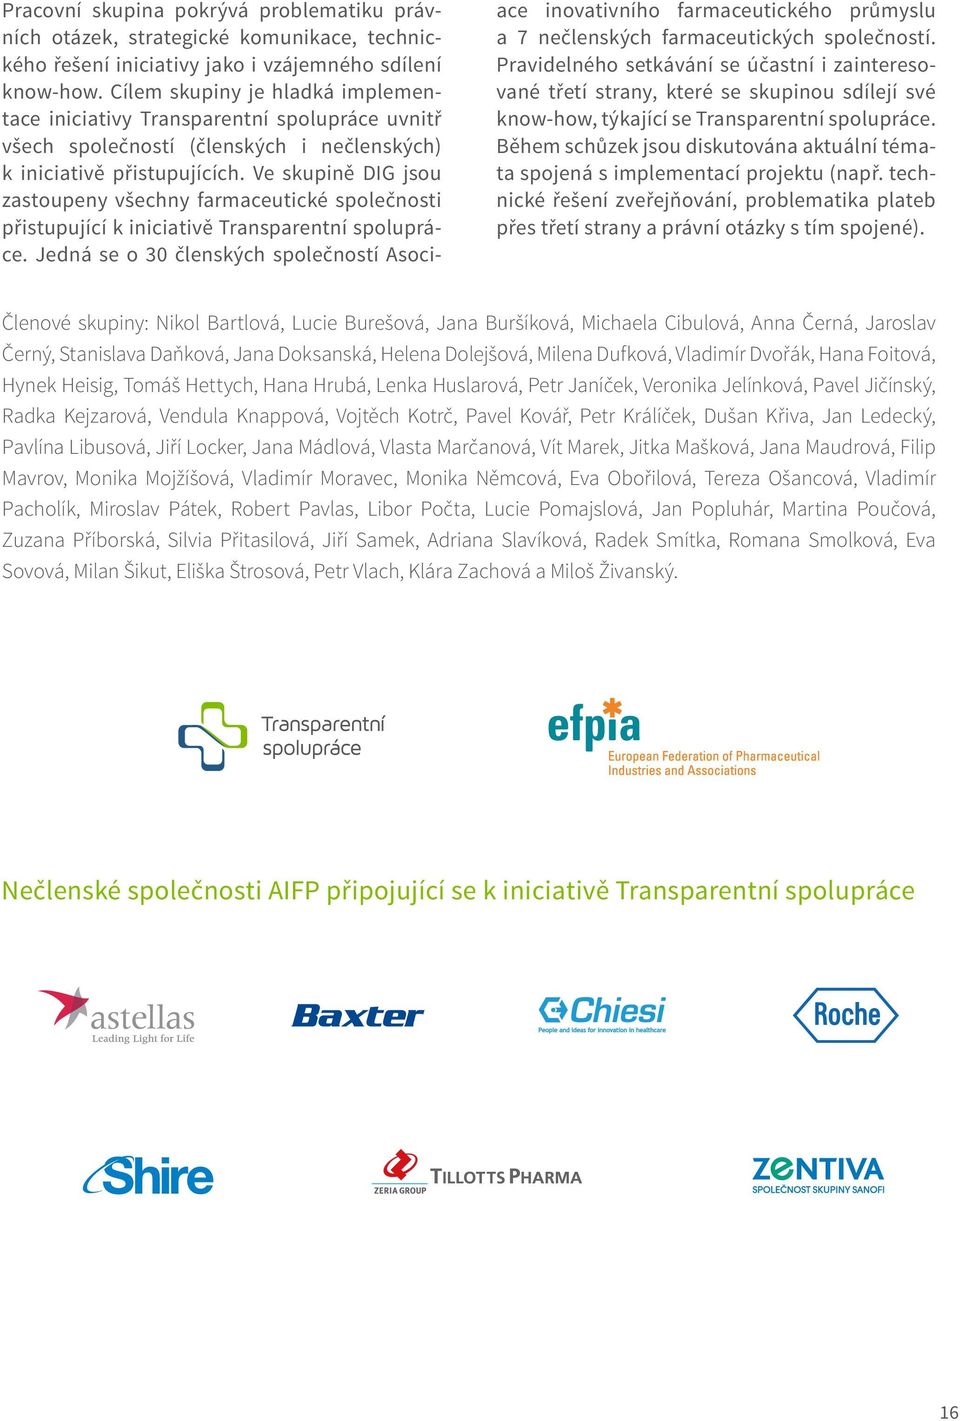 Ve skupině DIG jsou zastoupeny všechny farmaceutické společnosti přistupující k iniciativě Transparentní spolupráce.